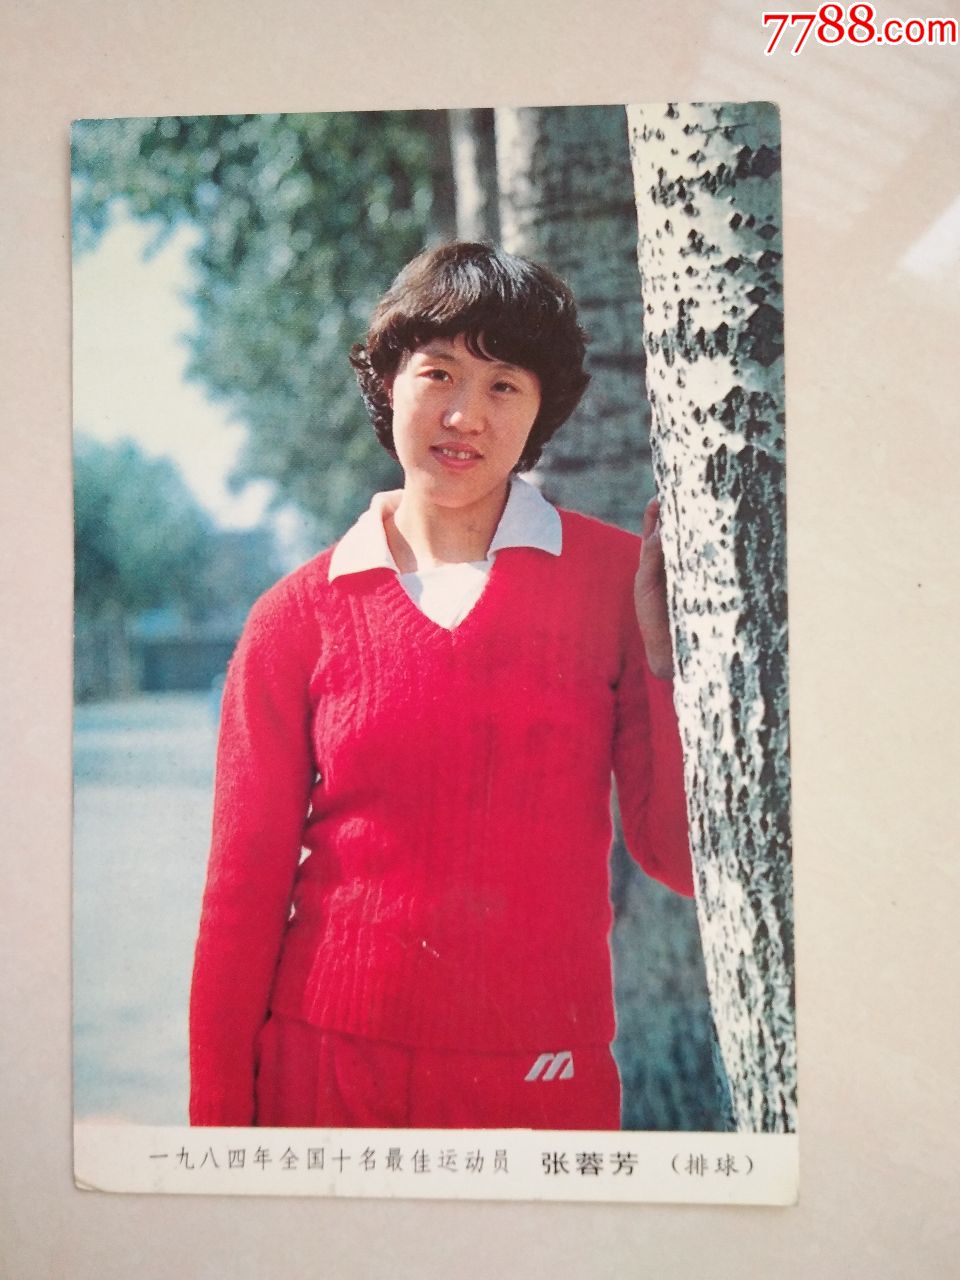 明信片-1984年全国十名最佳运动员-张蓉芳(排球),背面广告青春宝_价格